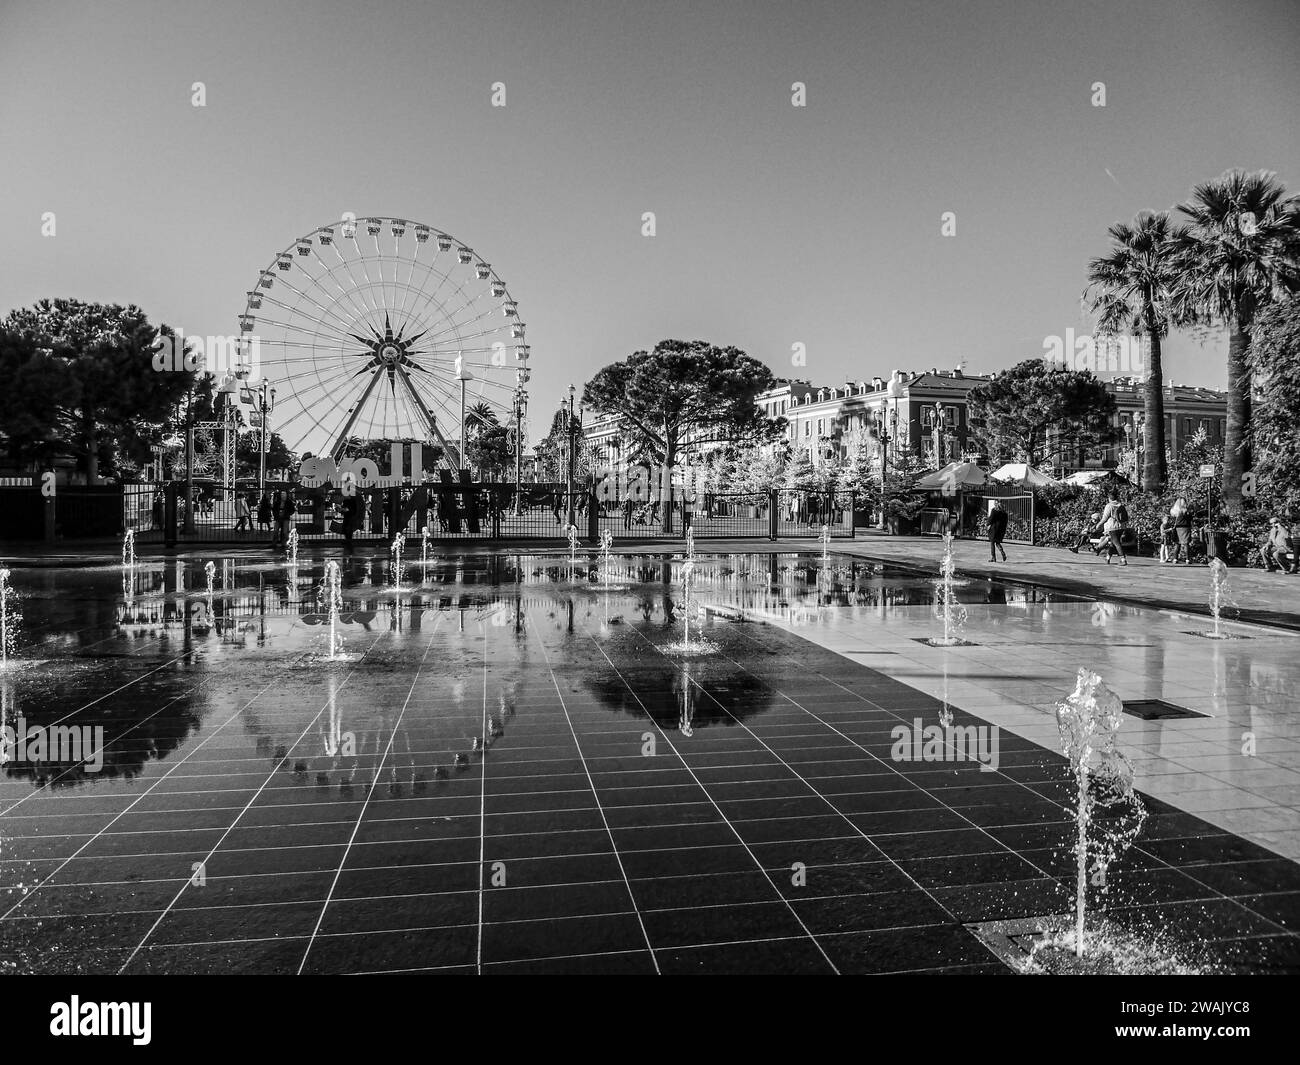 Une vue en grand angle d'un parc d'attractions emblématique avec une roue noire et blanche spectaculaire, des fontaines illuminées et un paysage verdoyant Banque D'Images